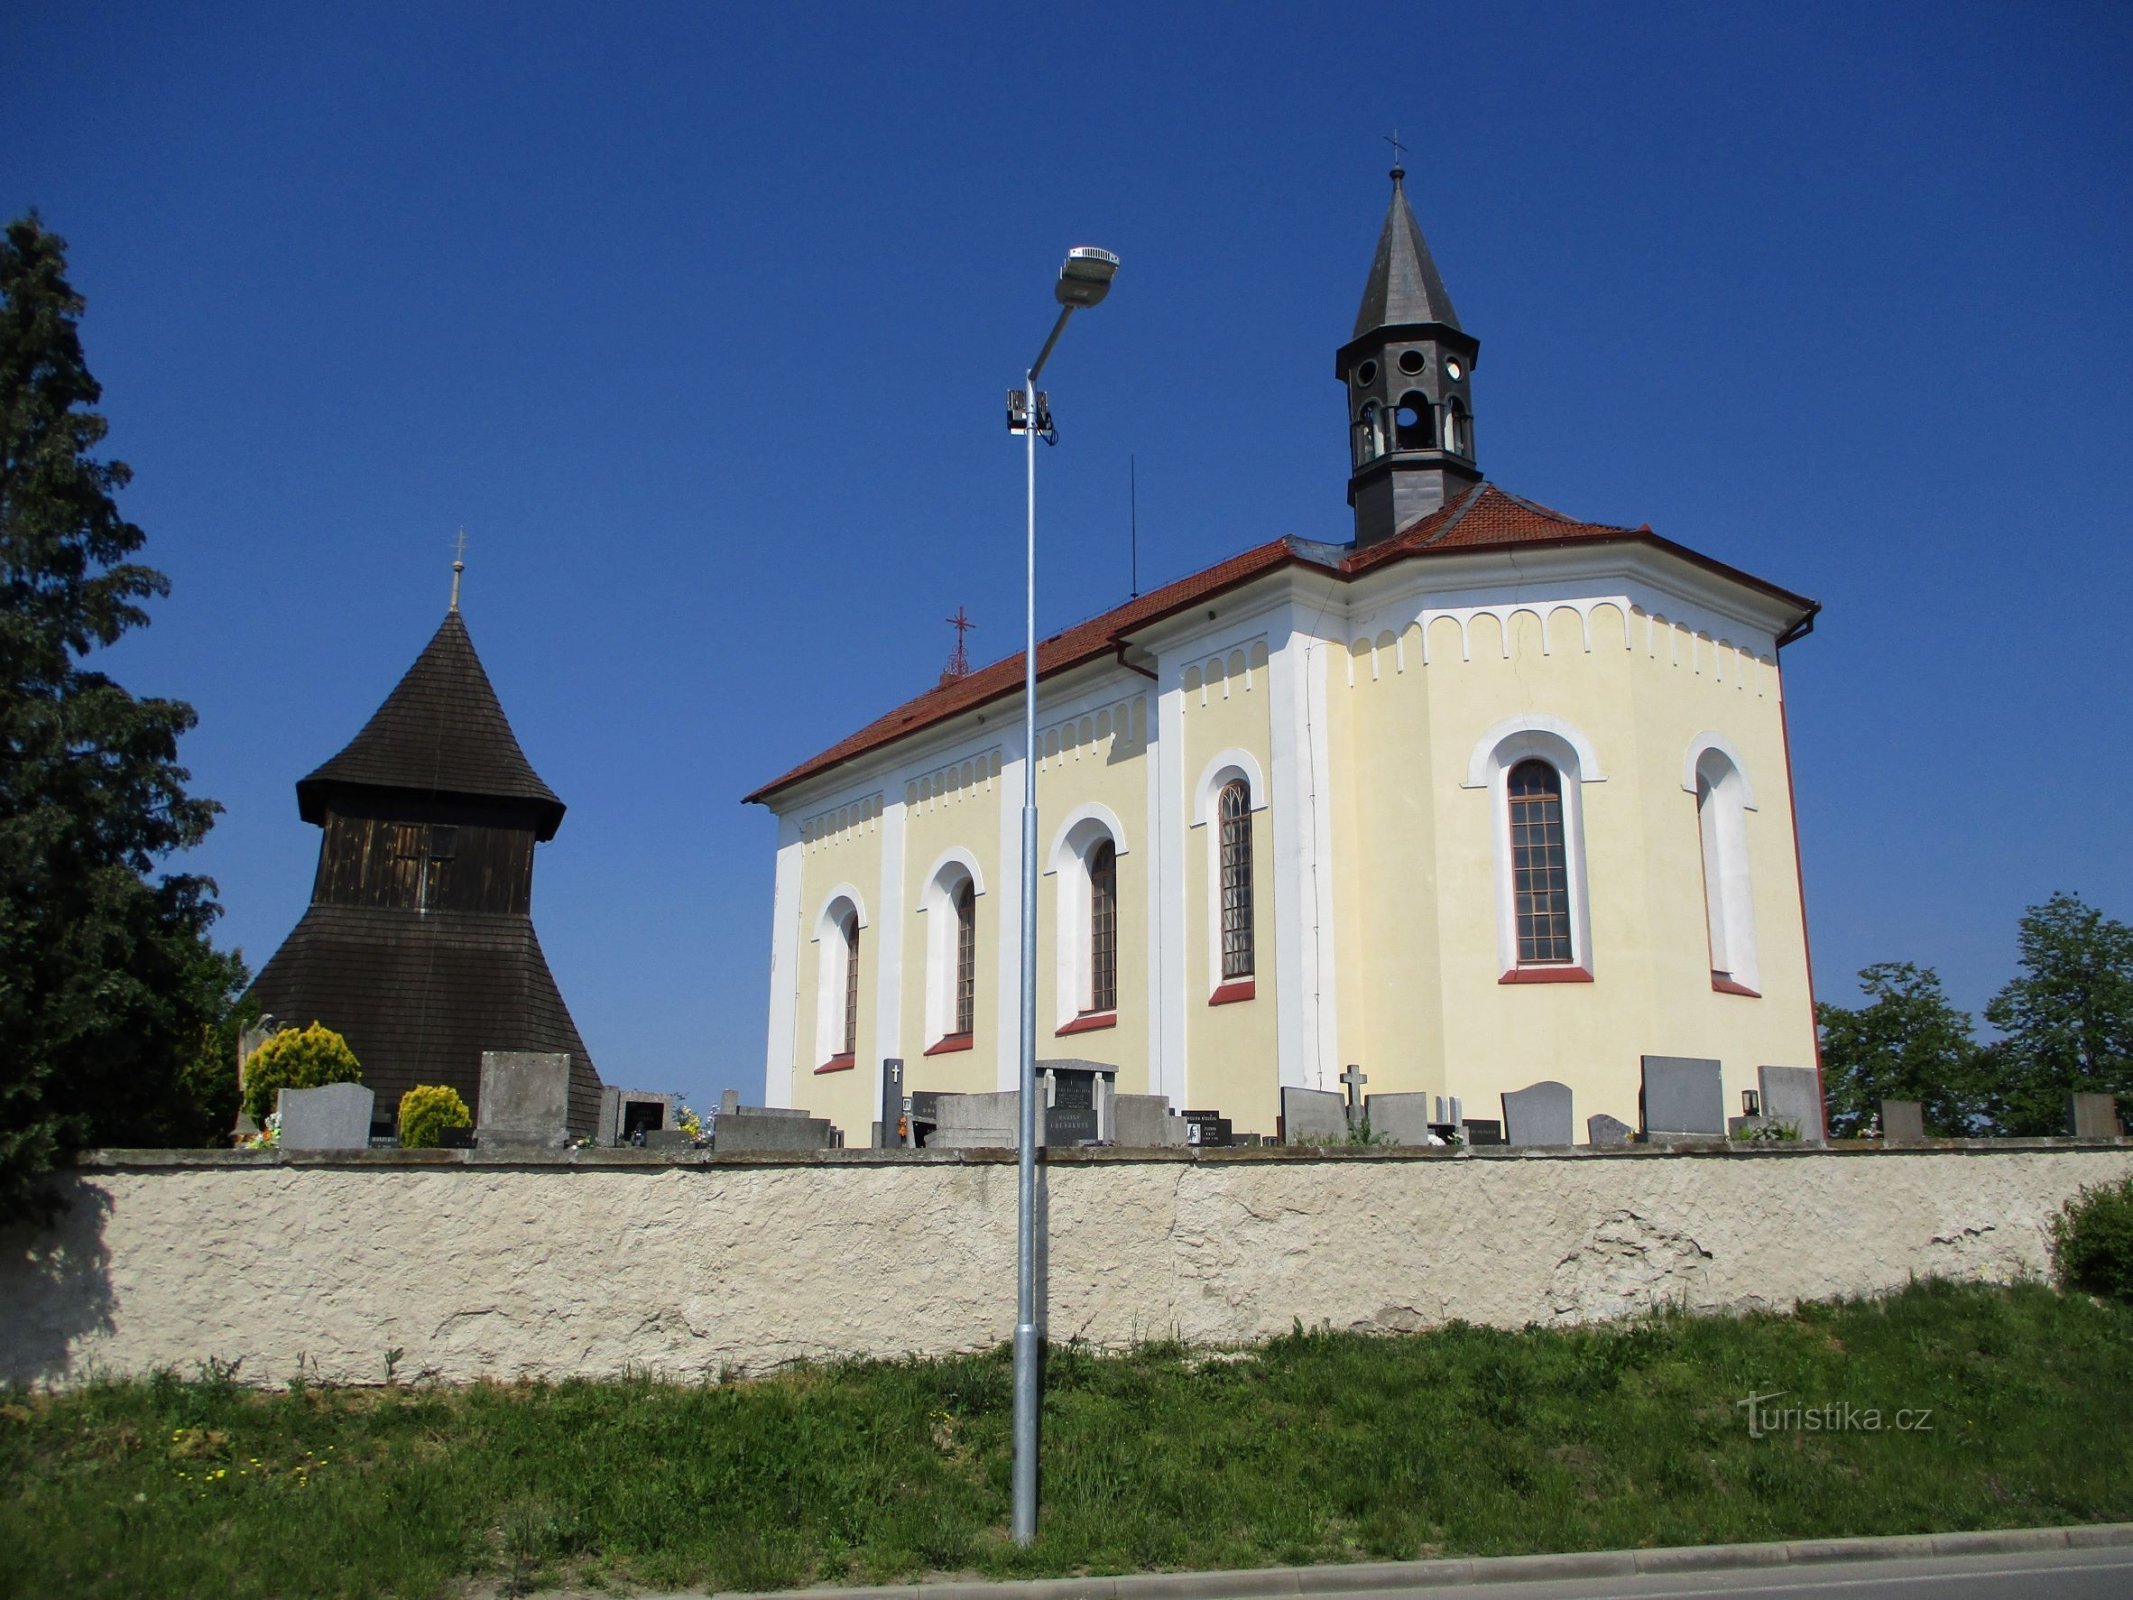 Zvonik i crkva sv. Vaclava (Horní Ředice, 16.5.2020.)